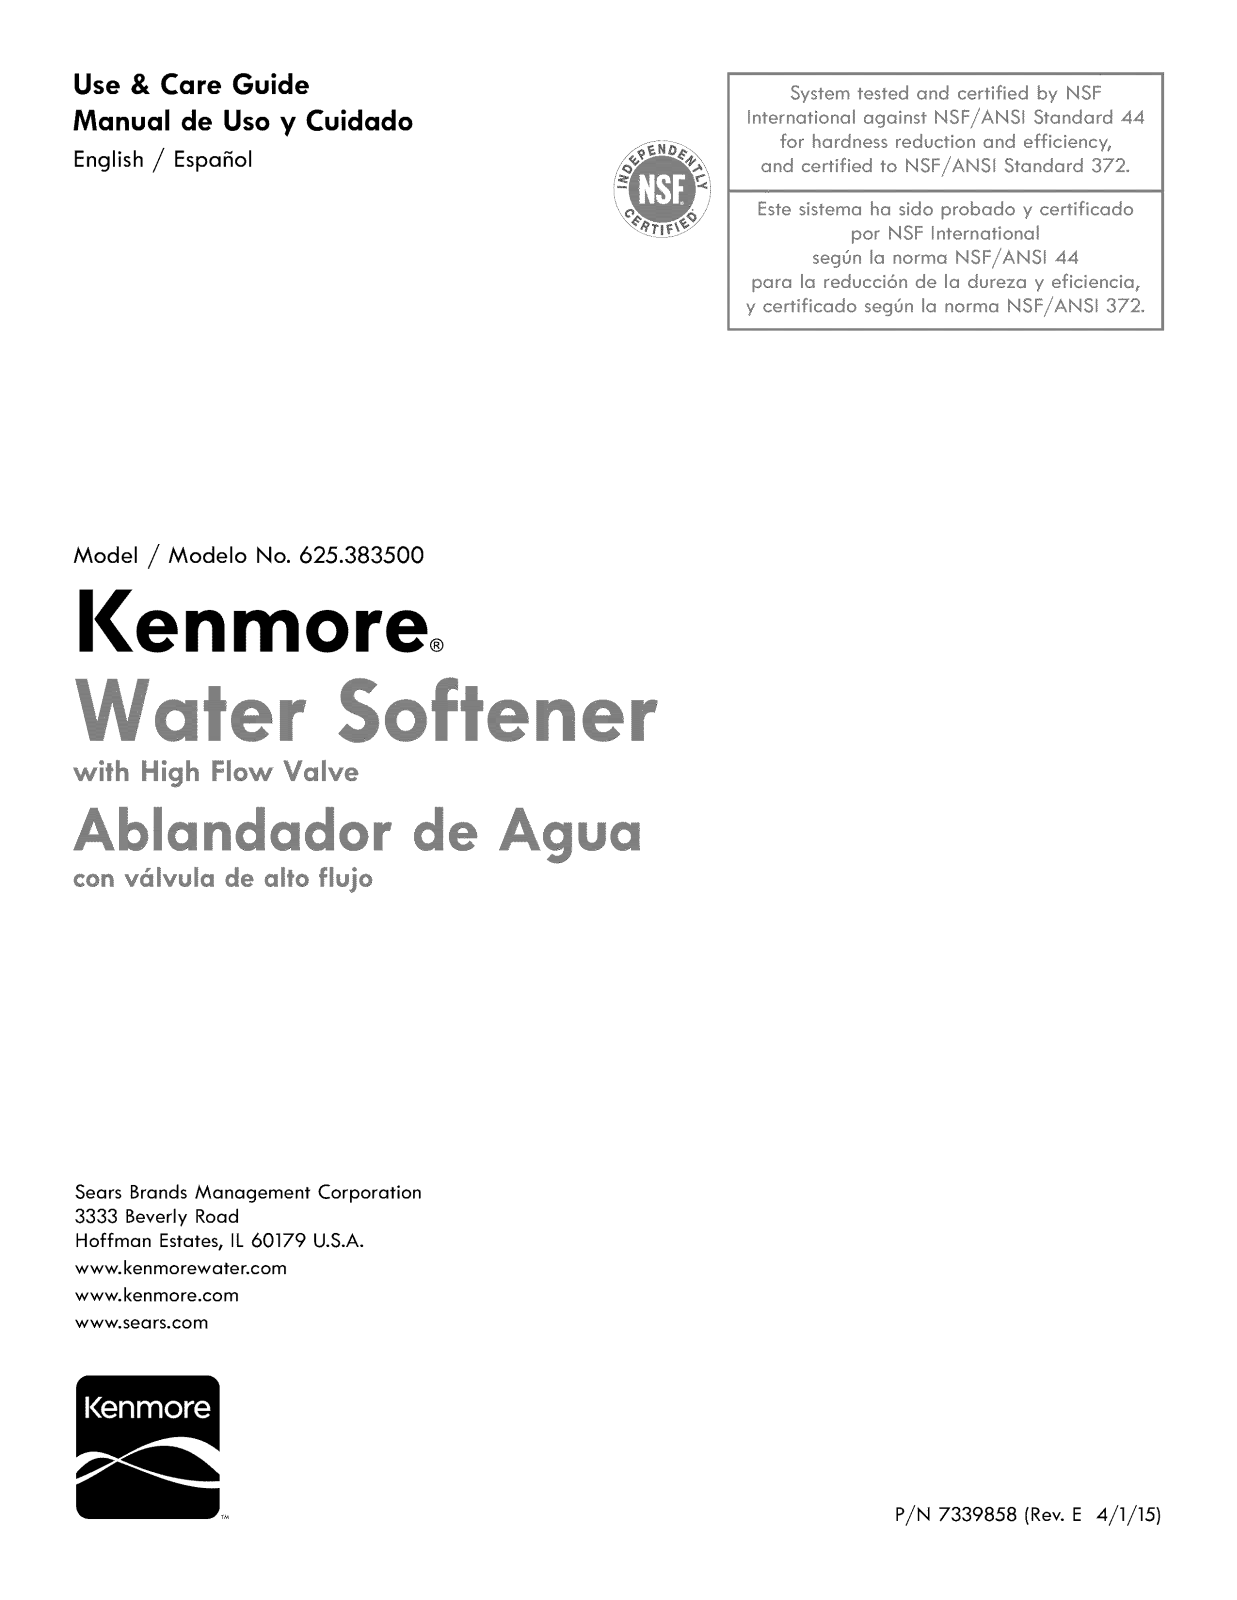 Kenmore 625383500 Owner’s Manual